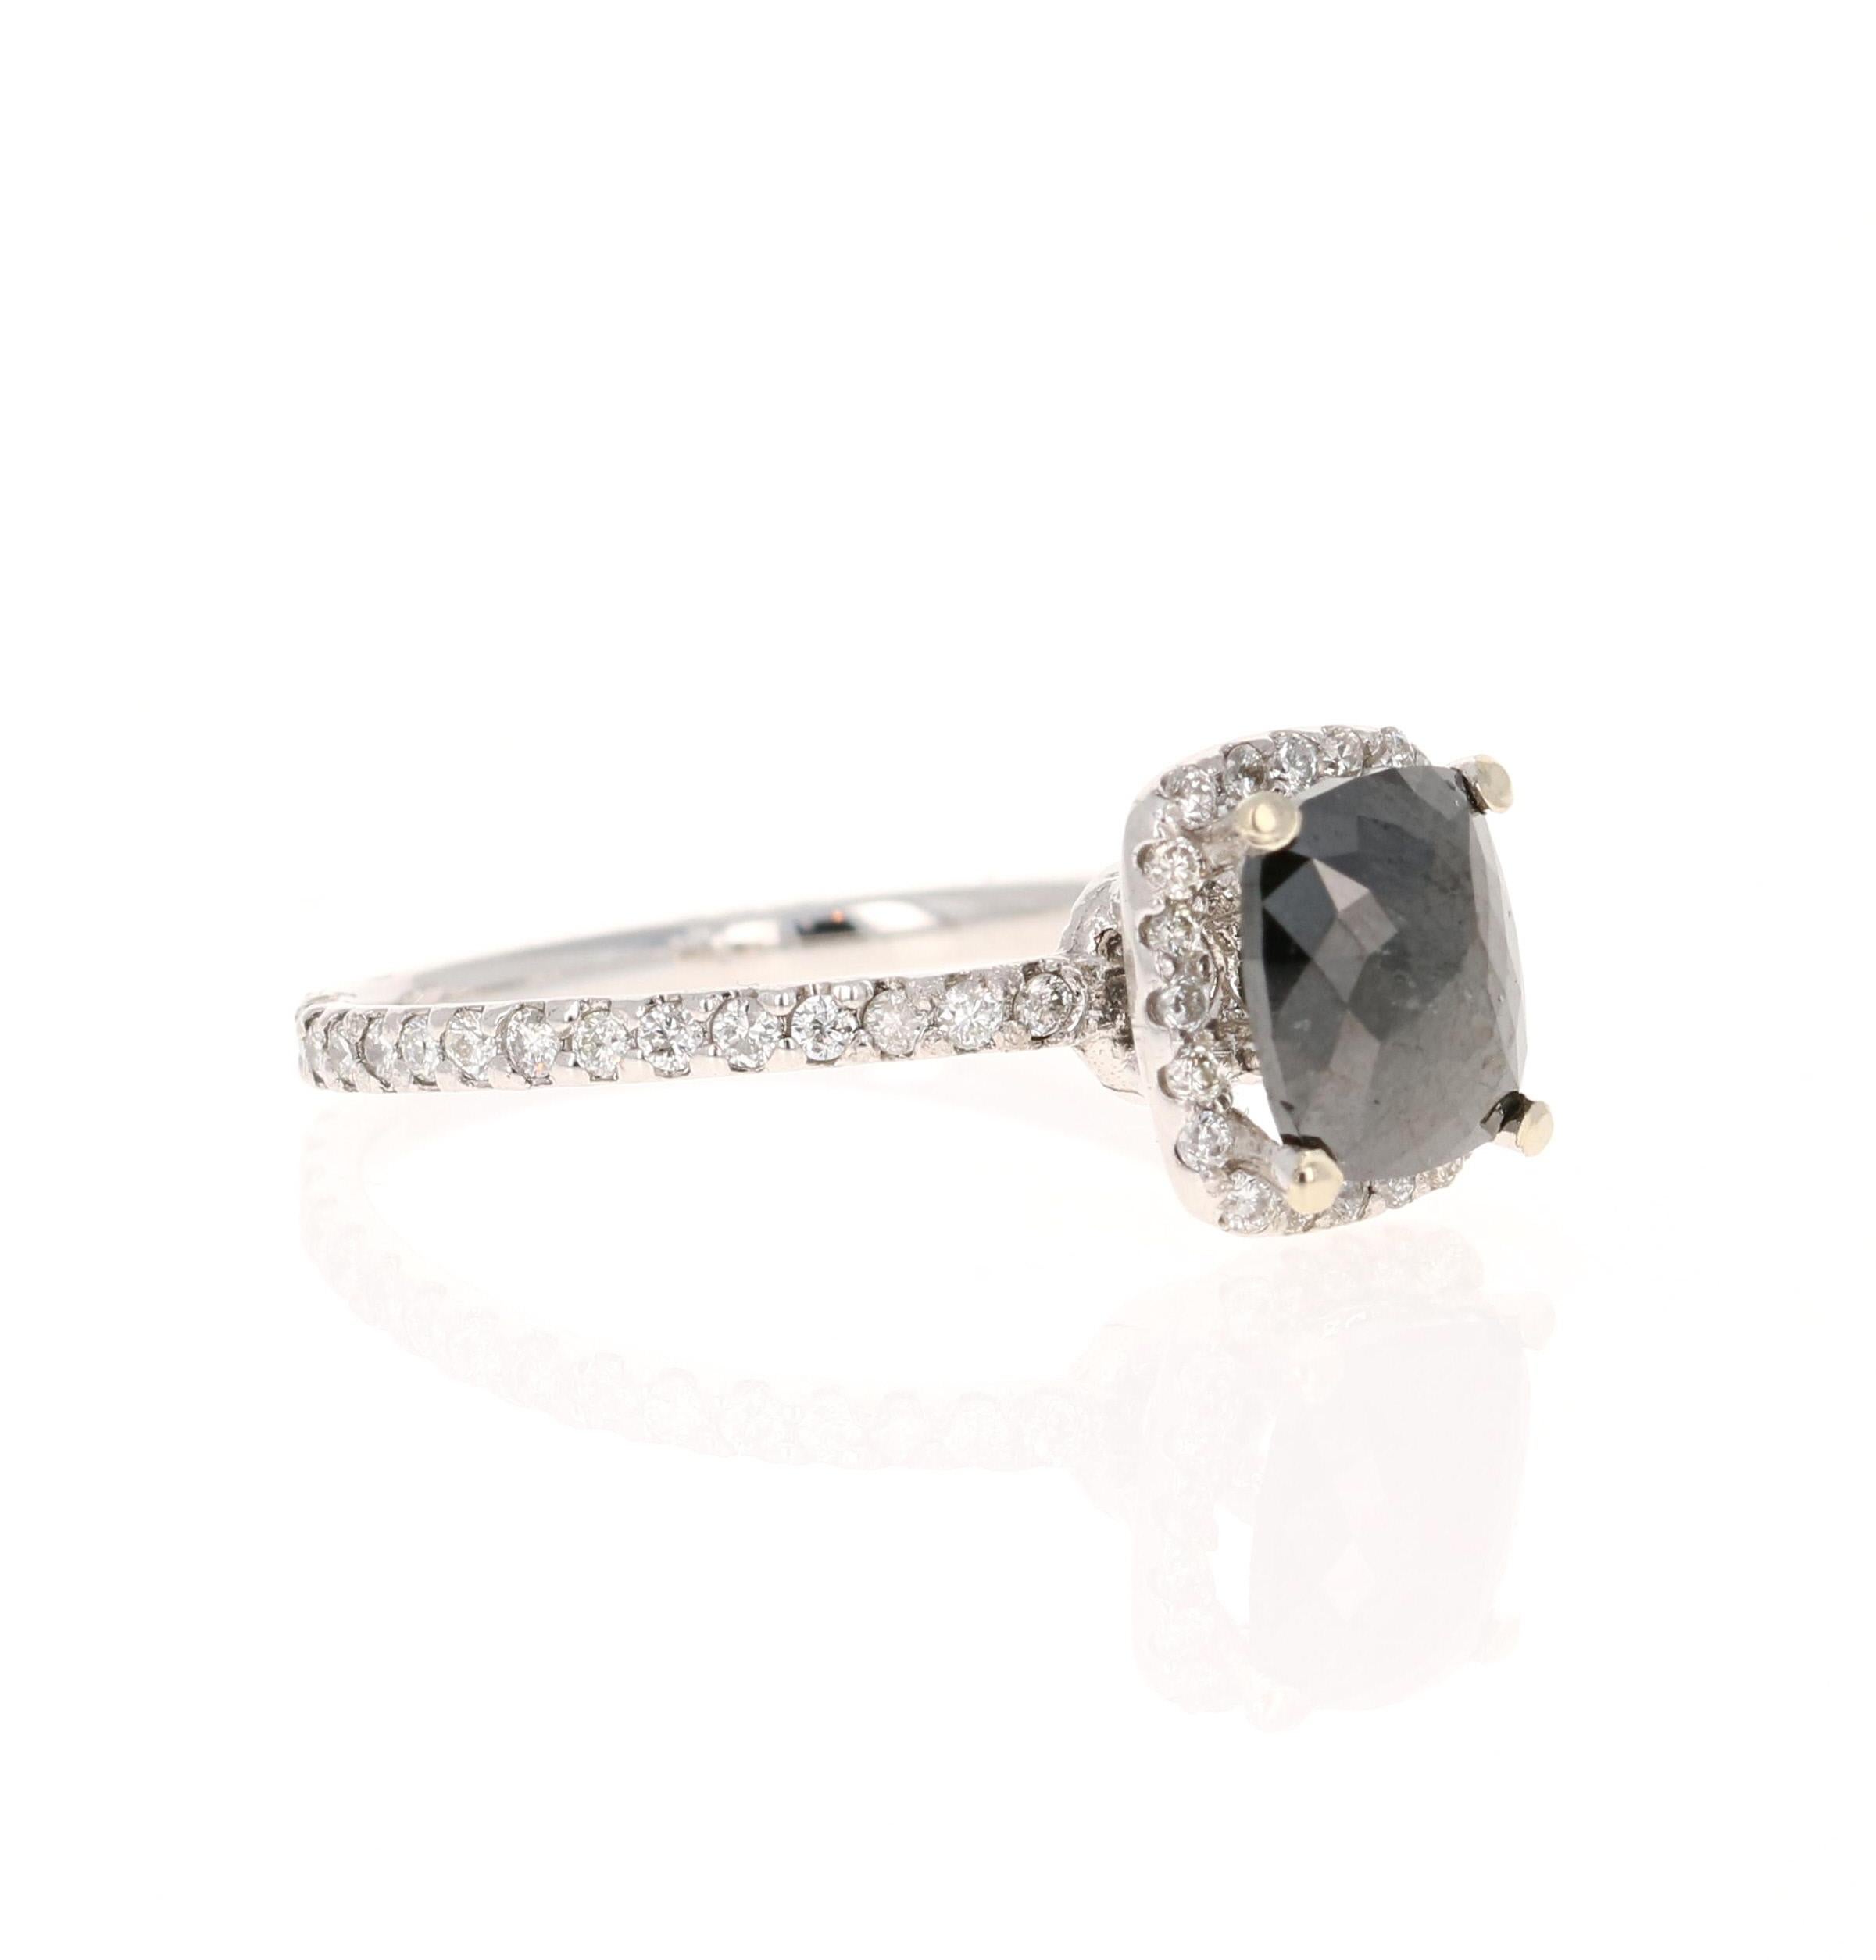 Der rechteckige schwarze Diamant im Kissenschliff hat 3,84 Karat und ist umgeben von 52 Diamanten im Rundschliff mit einem Gewicht von 1,08 Karat (Reinheit: VS, Farbe: H) und 52 Diamanten im Rundschliff mit einem Gewicht von 0,44 Karat. Das